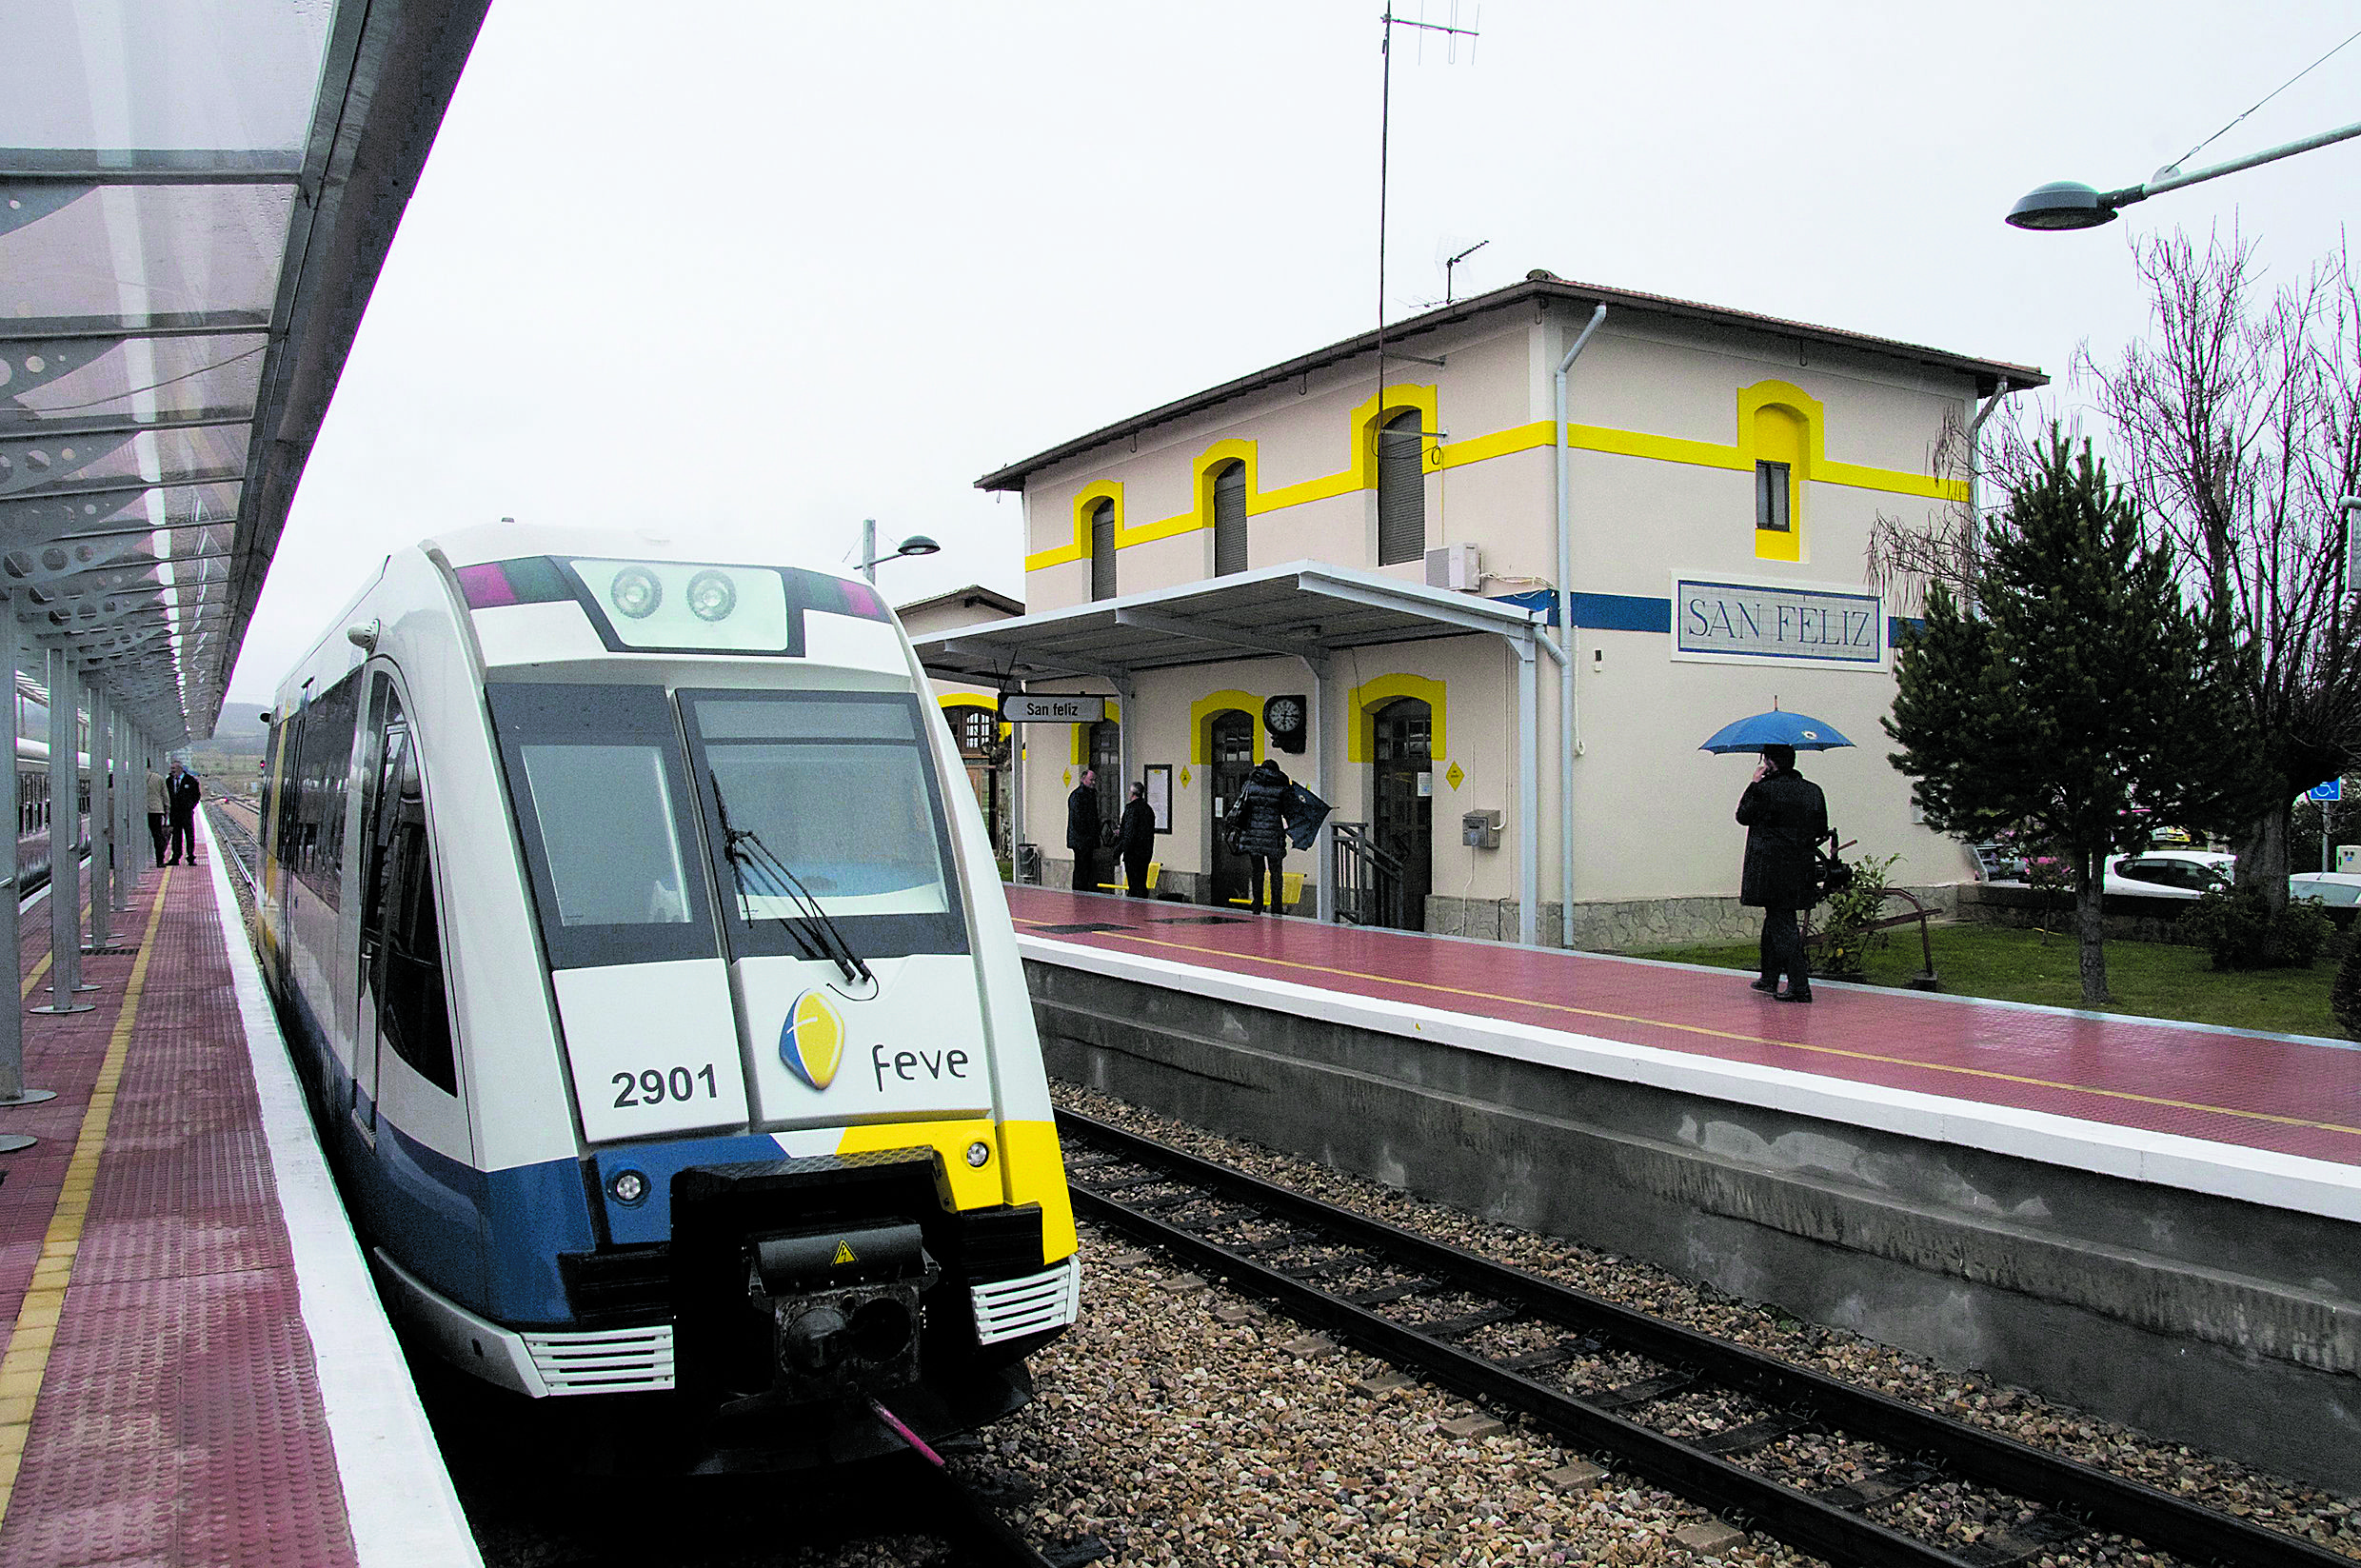 La estación de San feliz de Torío es una de las paradas por la provincia en el trayecto del Tren de la Robla, conocido también como el Hullero. | MAURICIO PEÑA